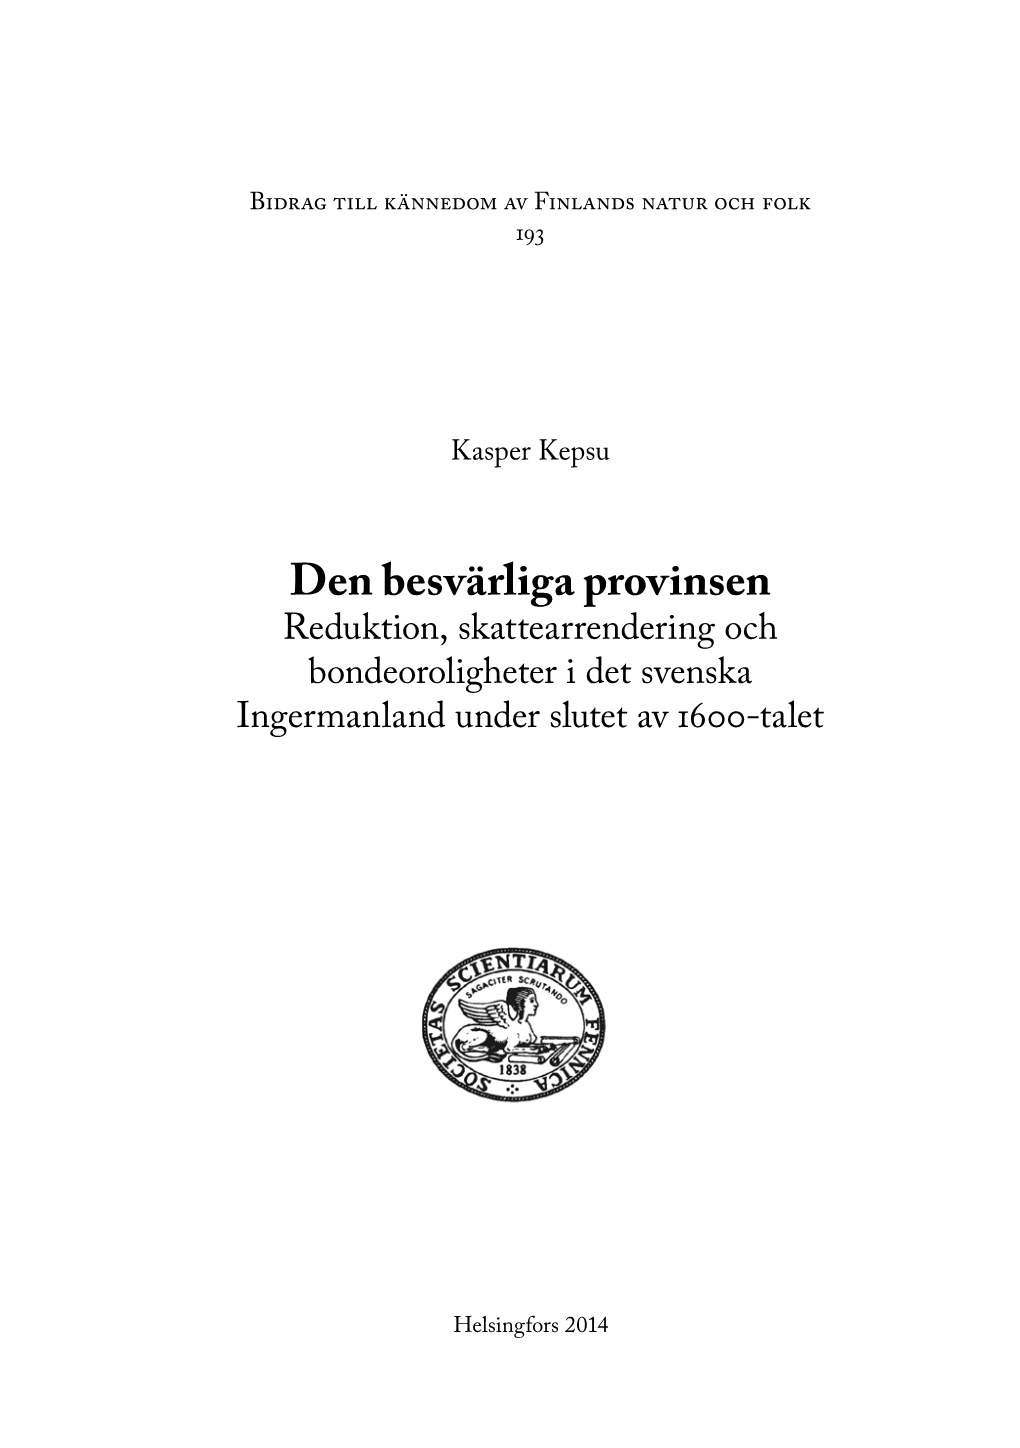 Den Besvärliga Provinsen Reduktion, Skattearrendering Och Bondeoroligheter I Det Svenska Ingermanland Under Slutet Av 1600-Talet